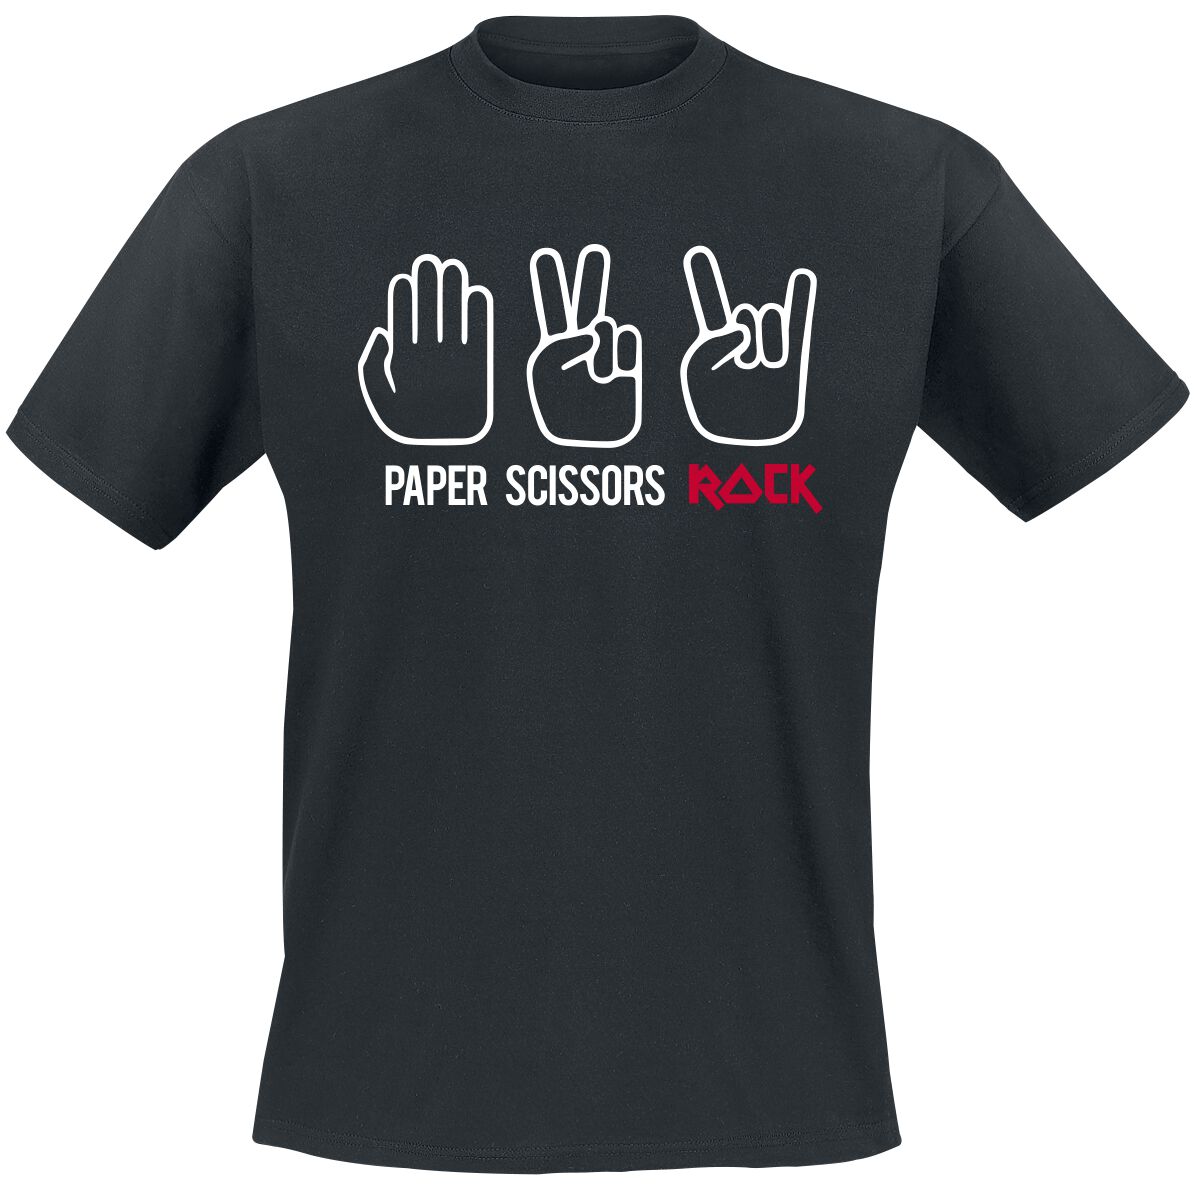 Sprüche T-Shirt - Paper Scissors Rock - S bis 3XL - für Männer - Größe L - schwarz